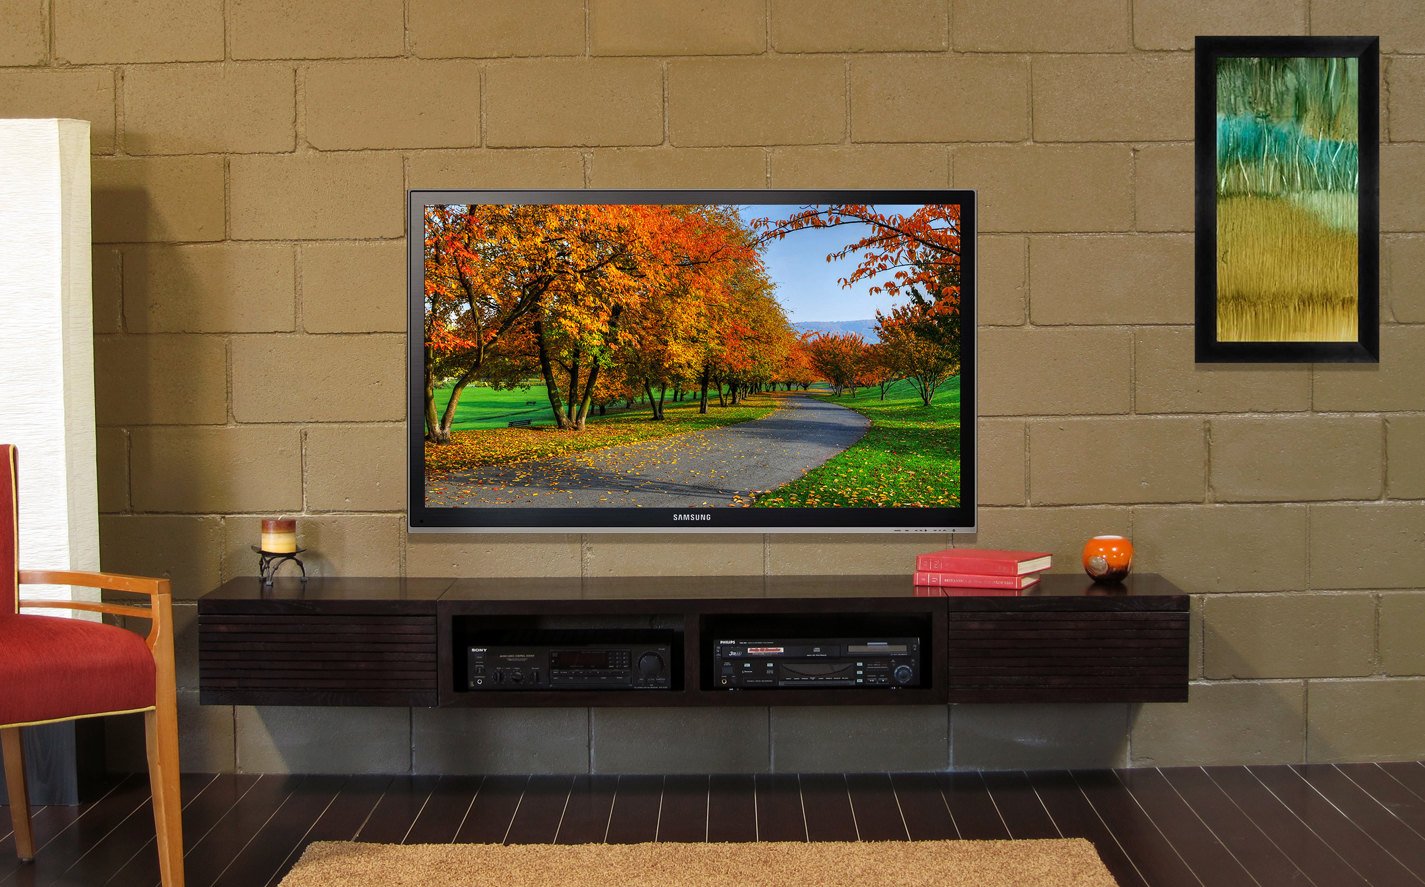 Полка под телевизор в современном стиле напольная